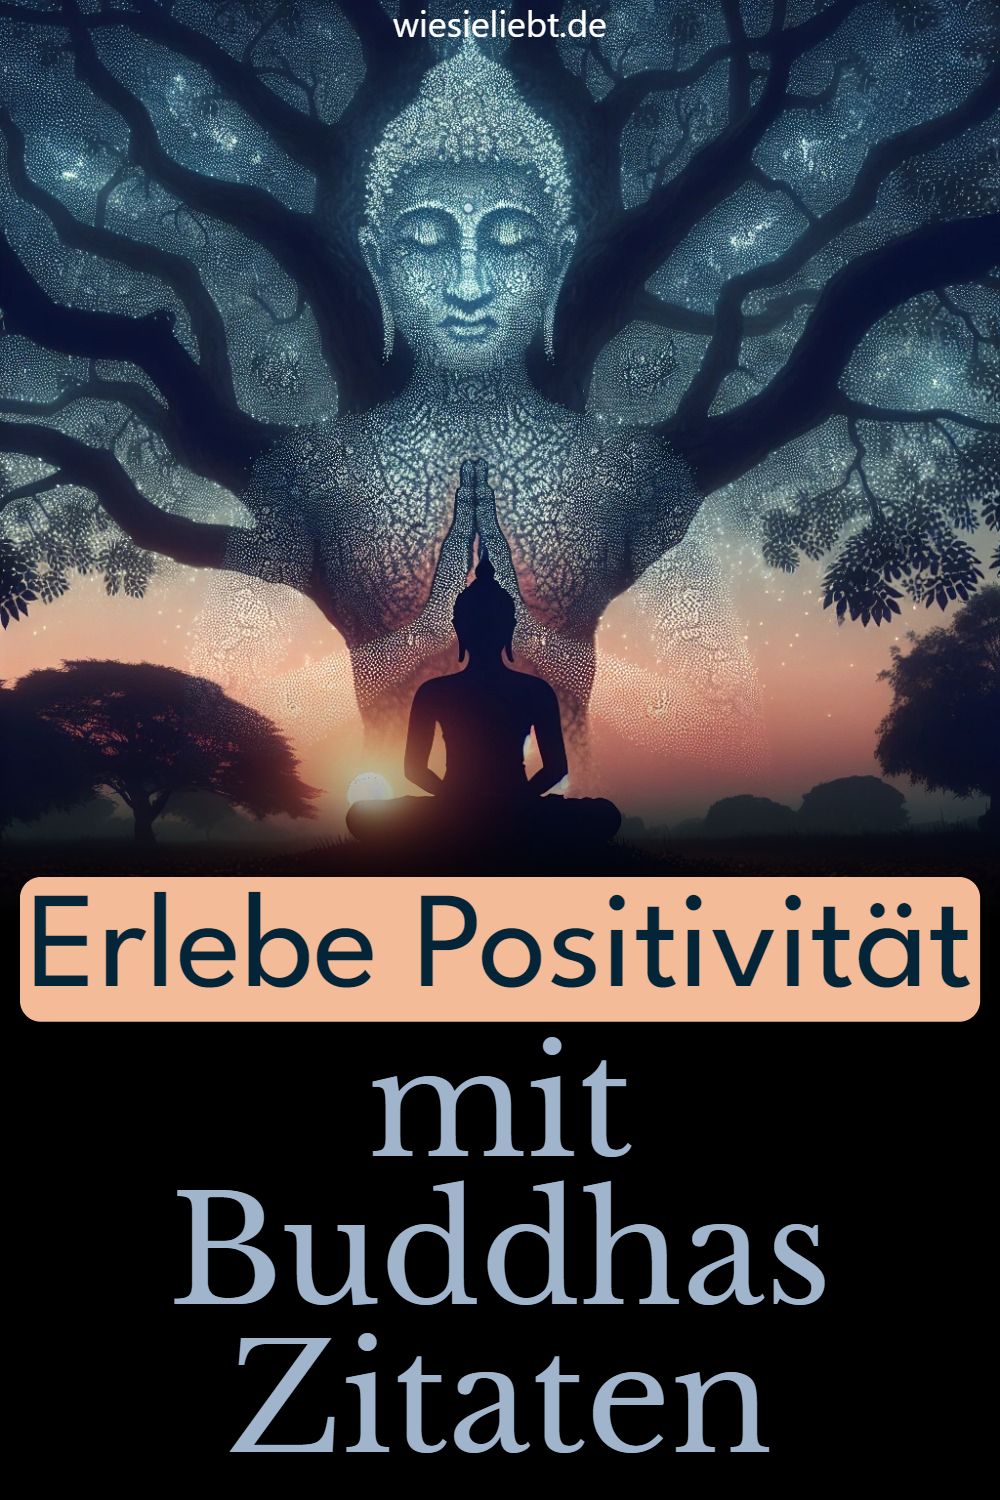 Erlebe Positivität mit Buddhas Zitaten